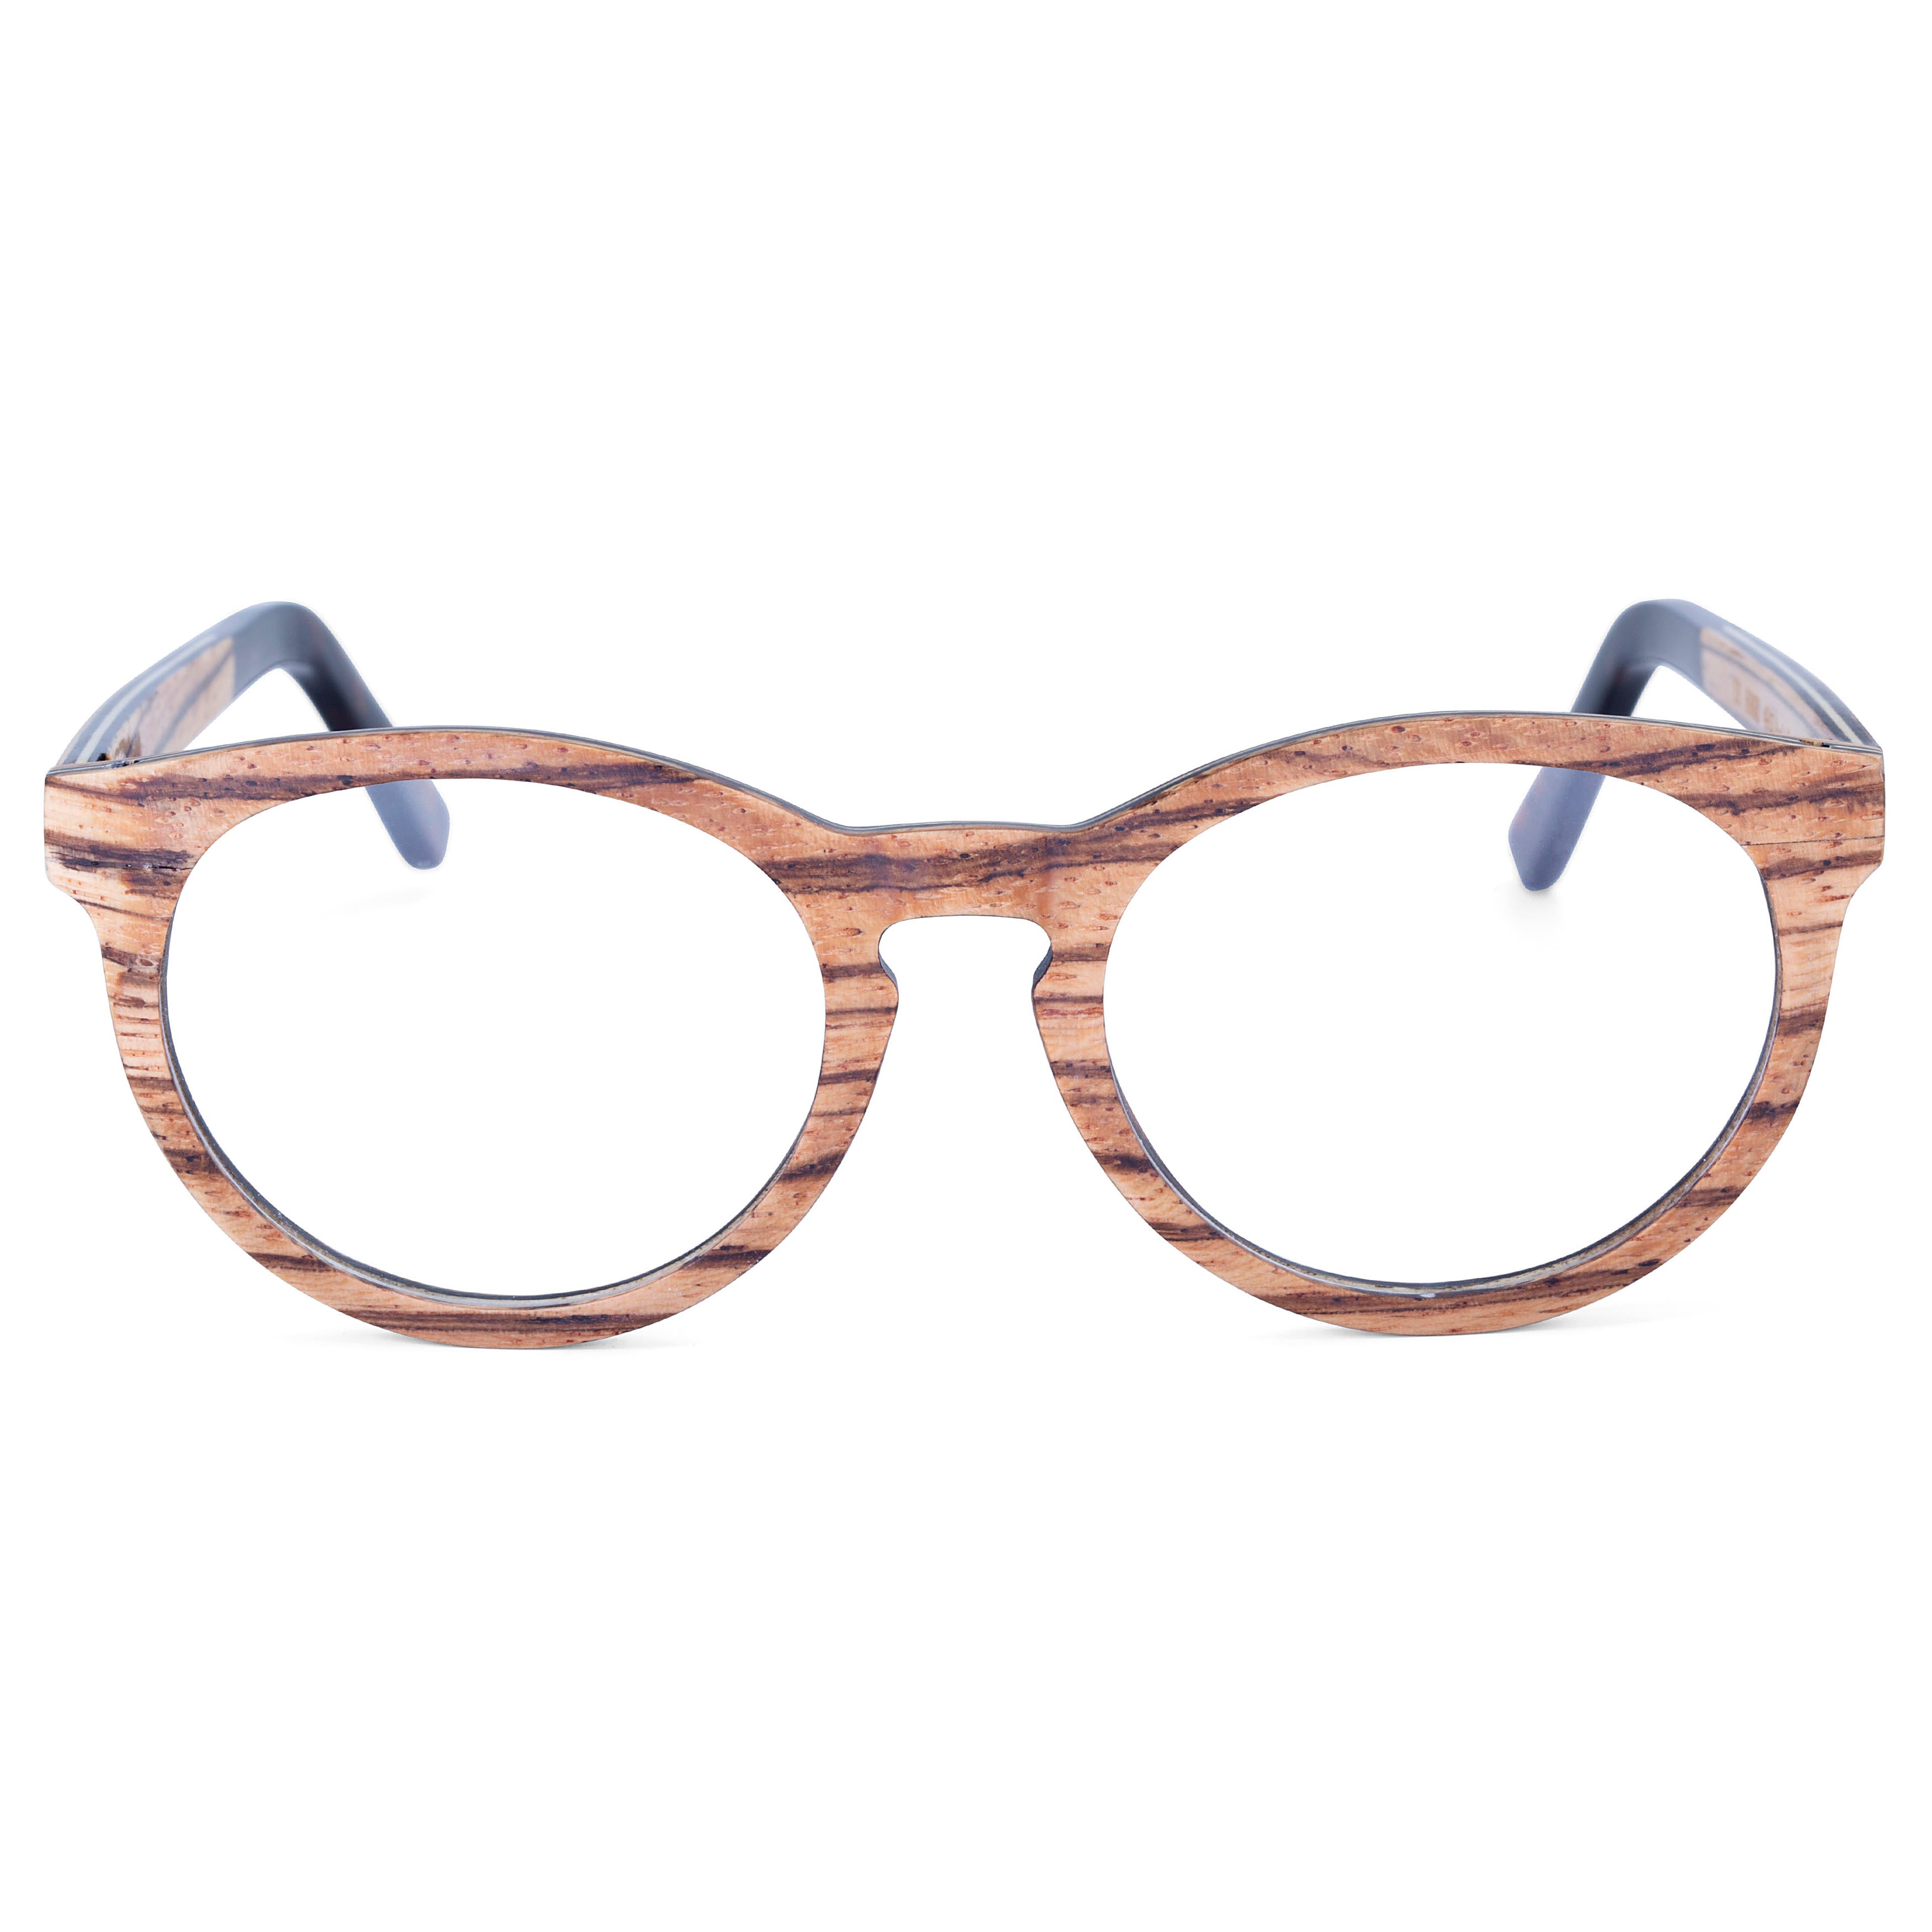 Dřevěné brýle s želvovinovým vzorem